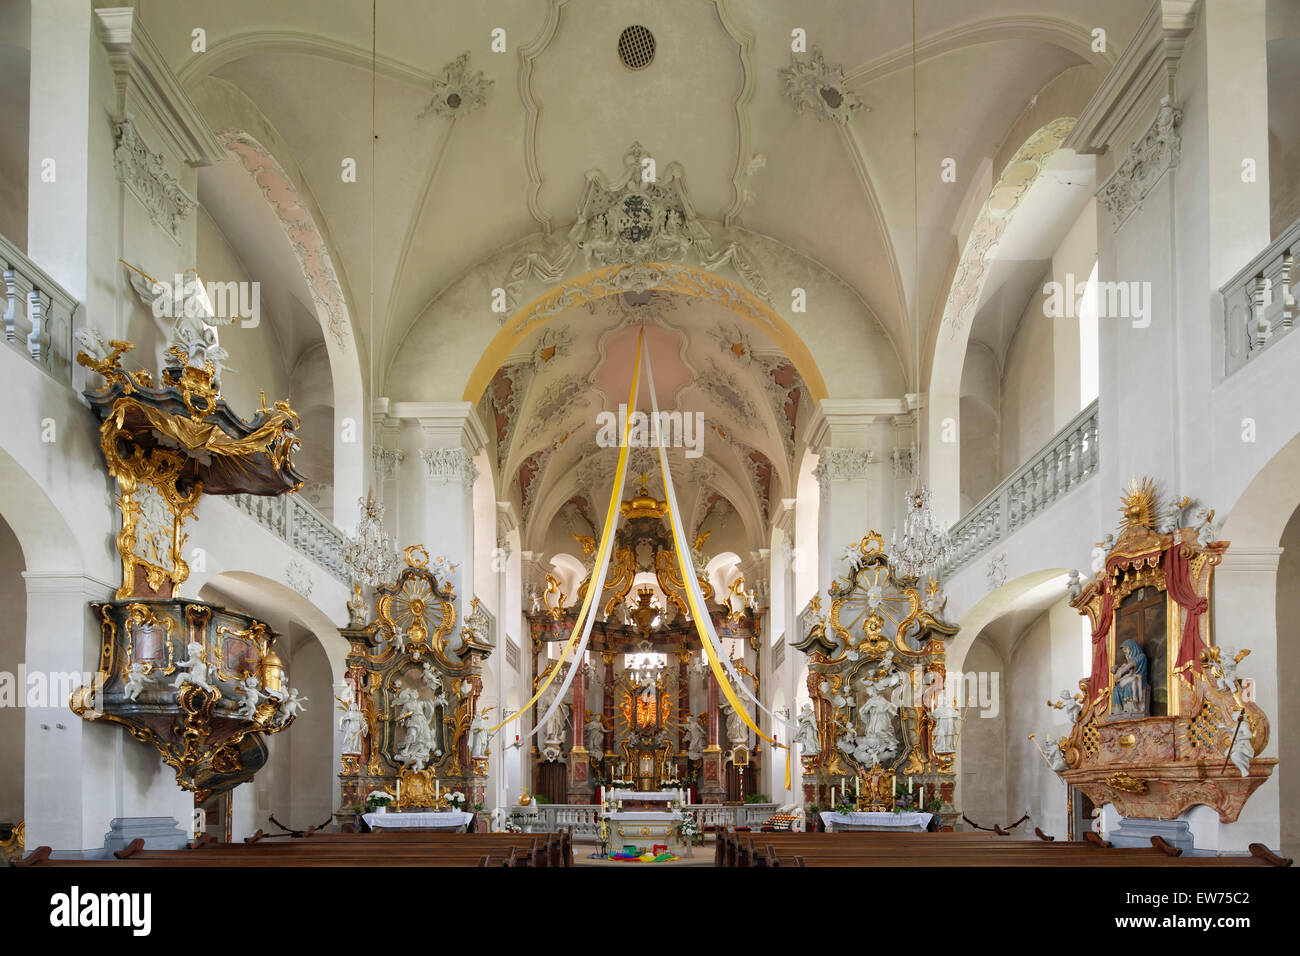 Interior de la iglesia de peregrinación de Maria Limbach, construida por Johann Balthasar Neumann, Limbach, Eltmann, Mainfranken Foto de stock